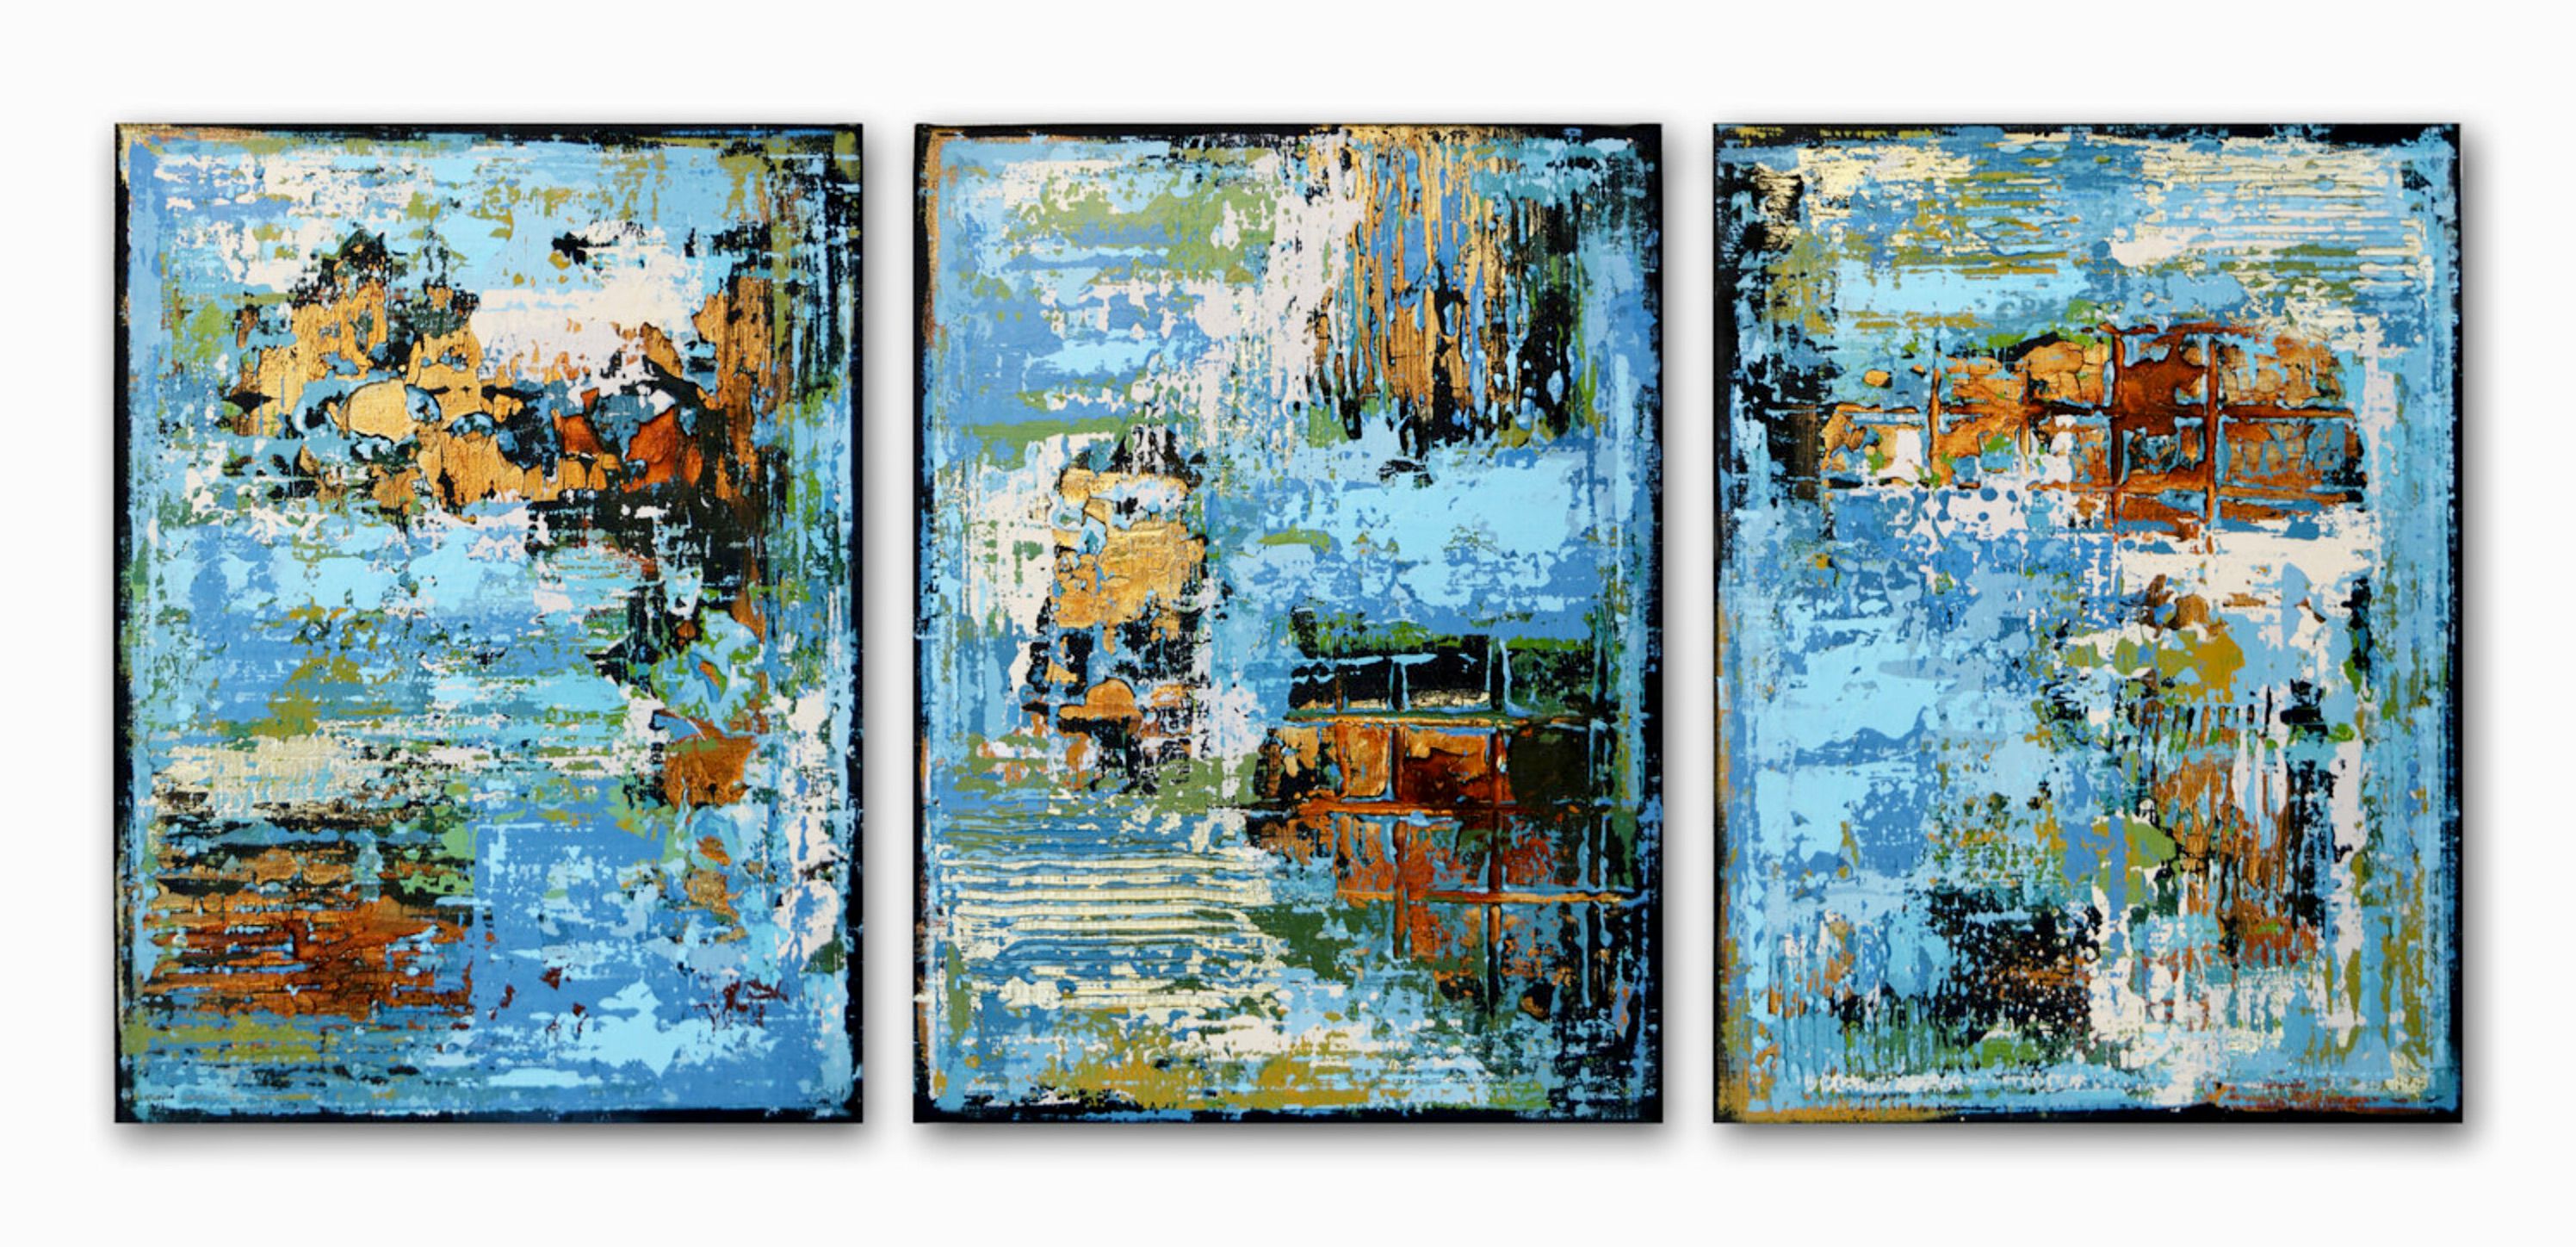 La peinture abstraite "MIDNIGHT SYMPHONY" d'Inez Froehlich se compose de trois parties de 110 x 80 cm. Les couleurs dominantes sont le bleu, le turquoise, le blanc, la rouille et l'or. Le style du tableau est shabby chic, style industriel, vintage, rétro, intérieur bohème.